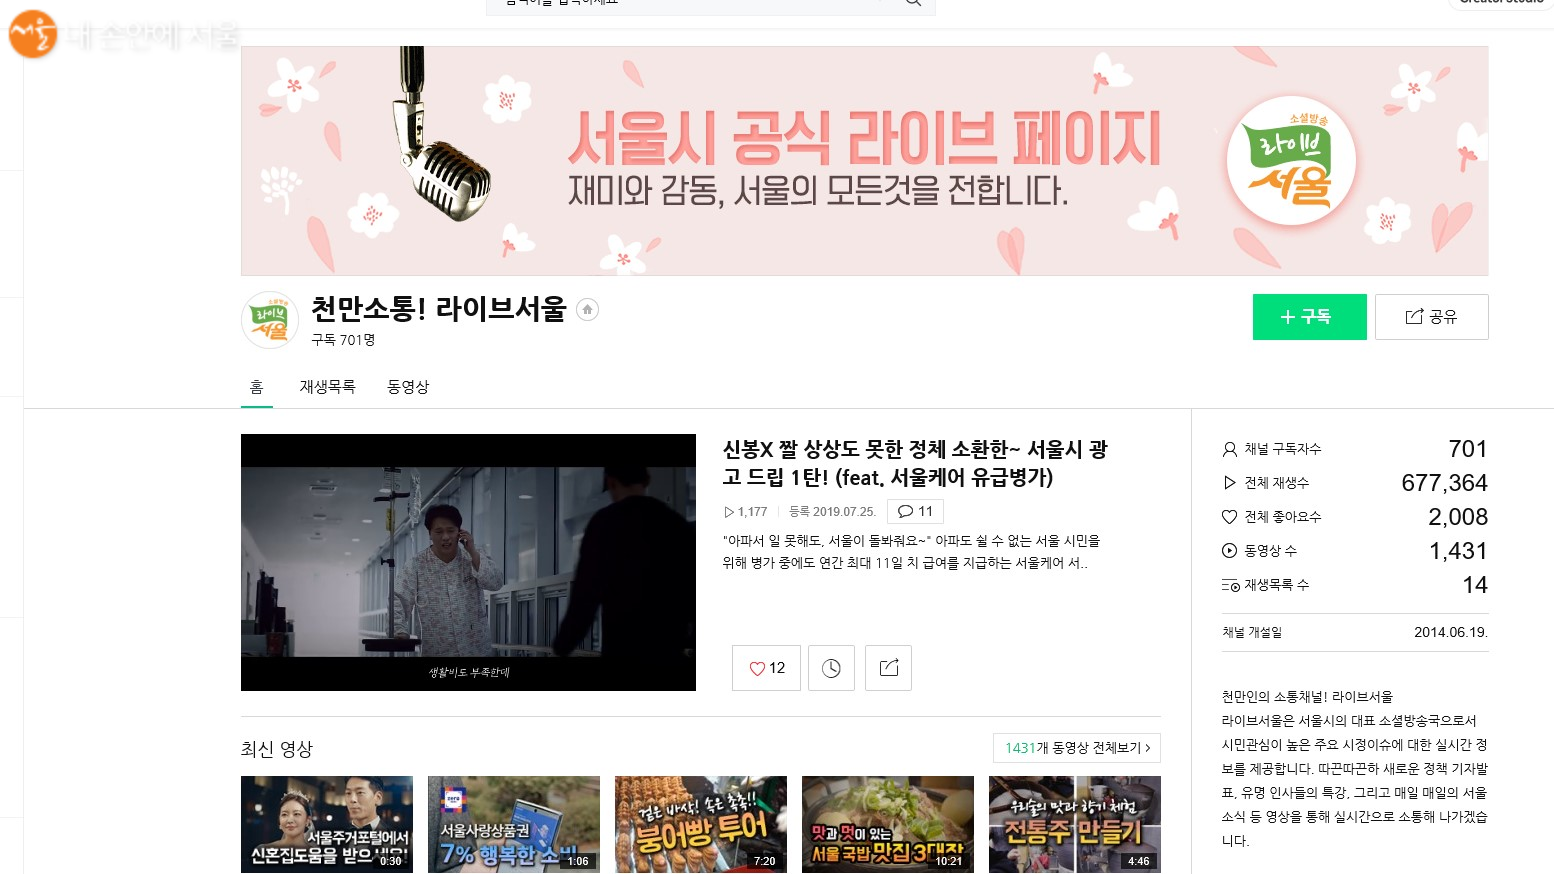 서울시 공식 라이브 페이지 ⓒ천만소통! 라이브서울 네이버 TV